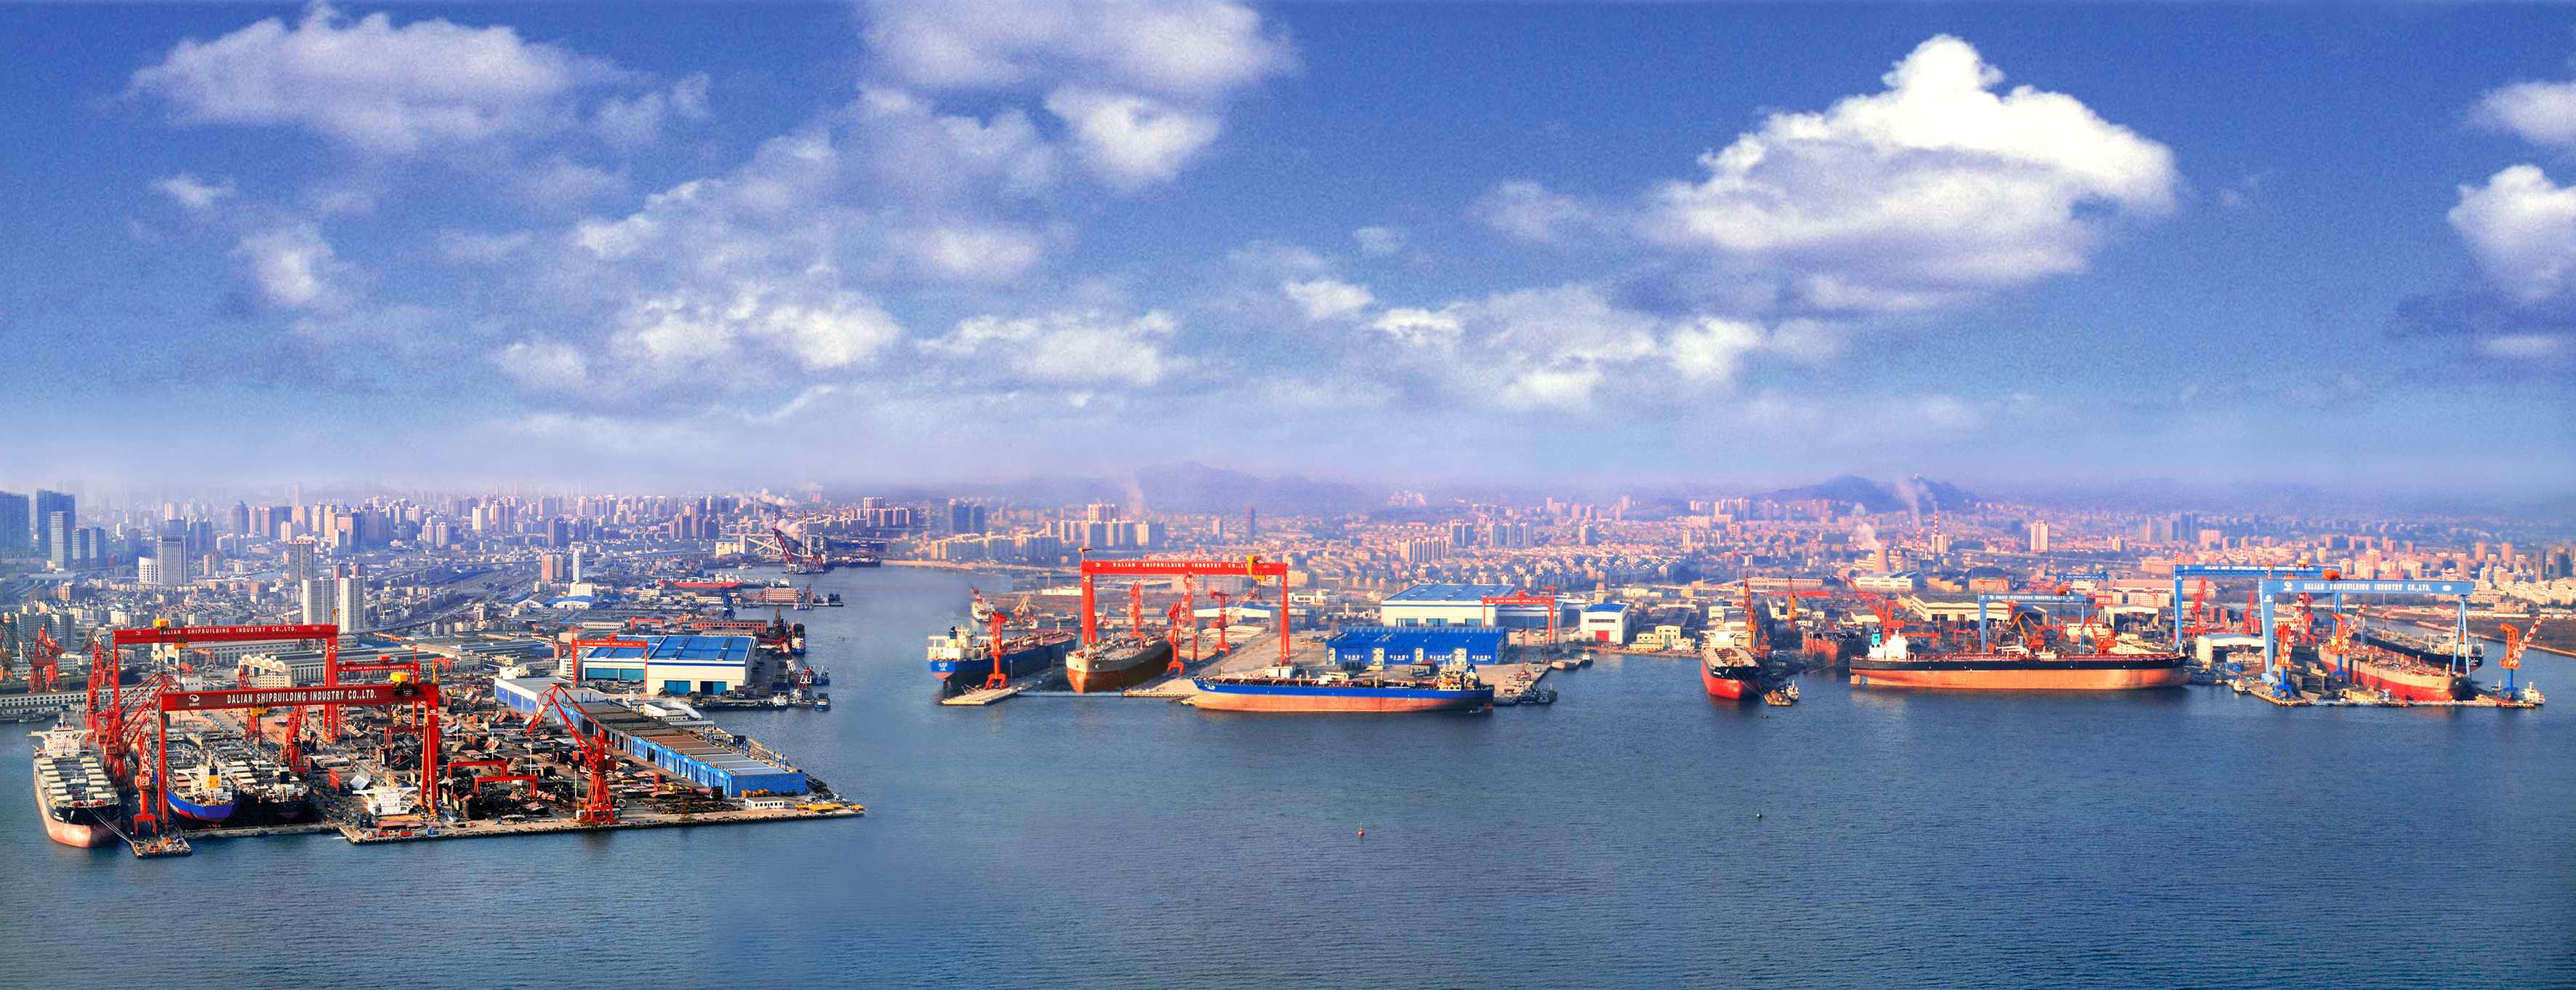 Dalian Shipyard unclear